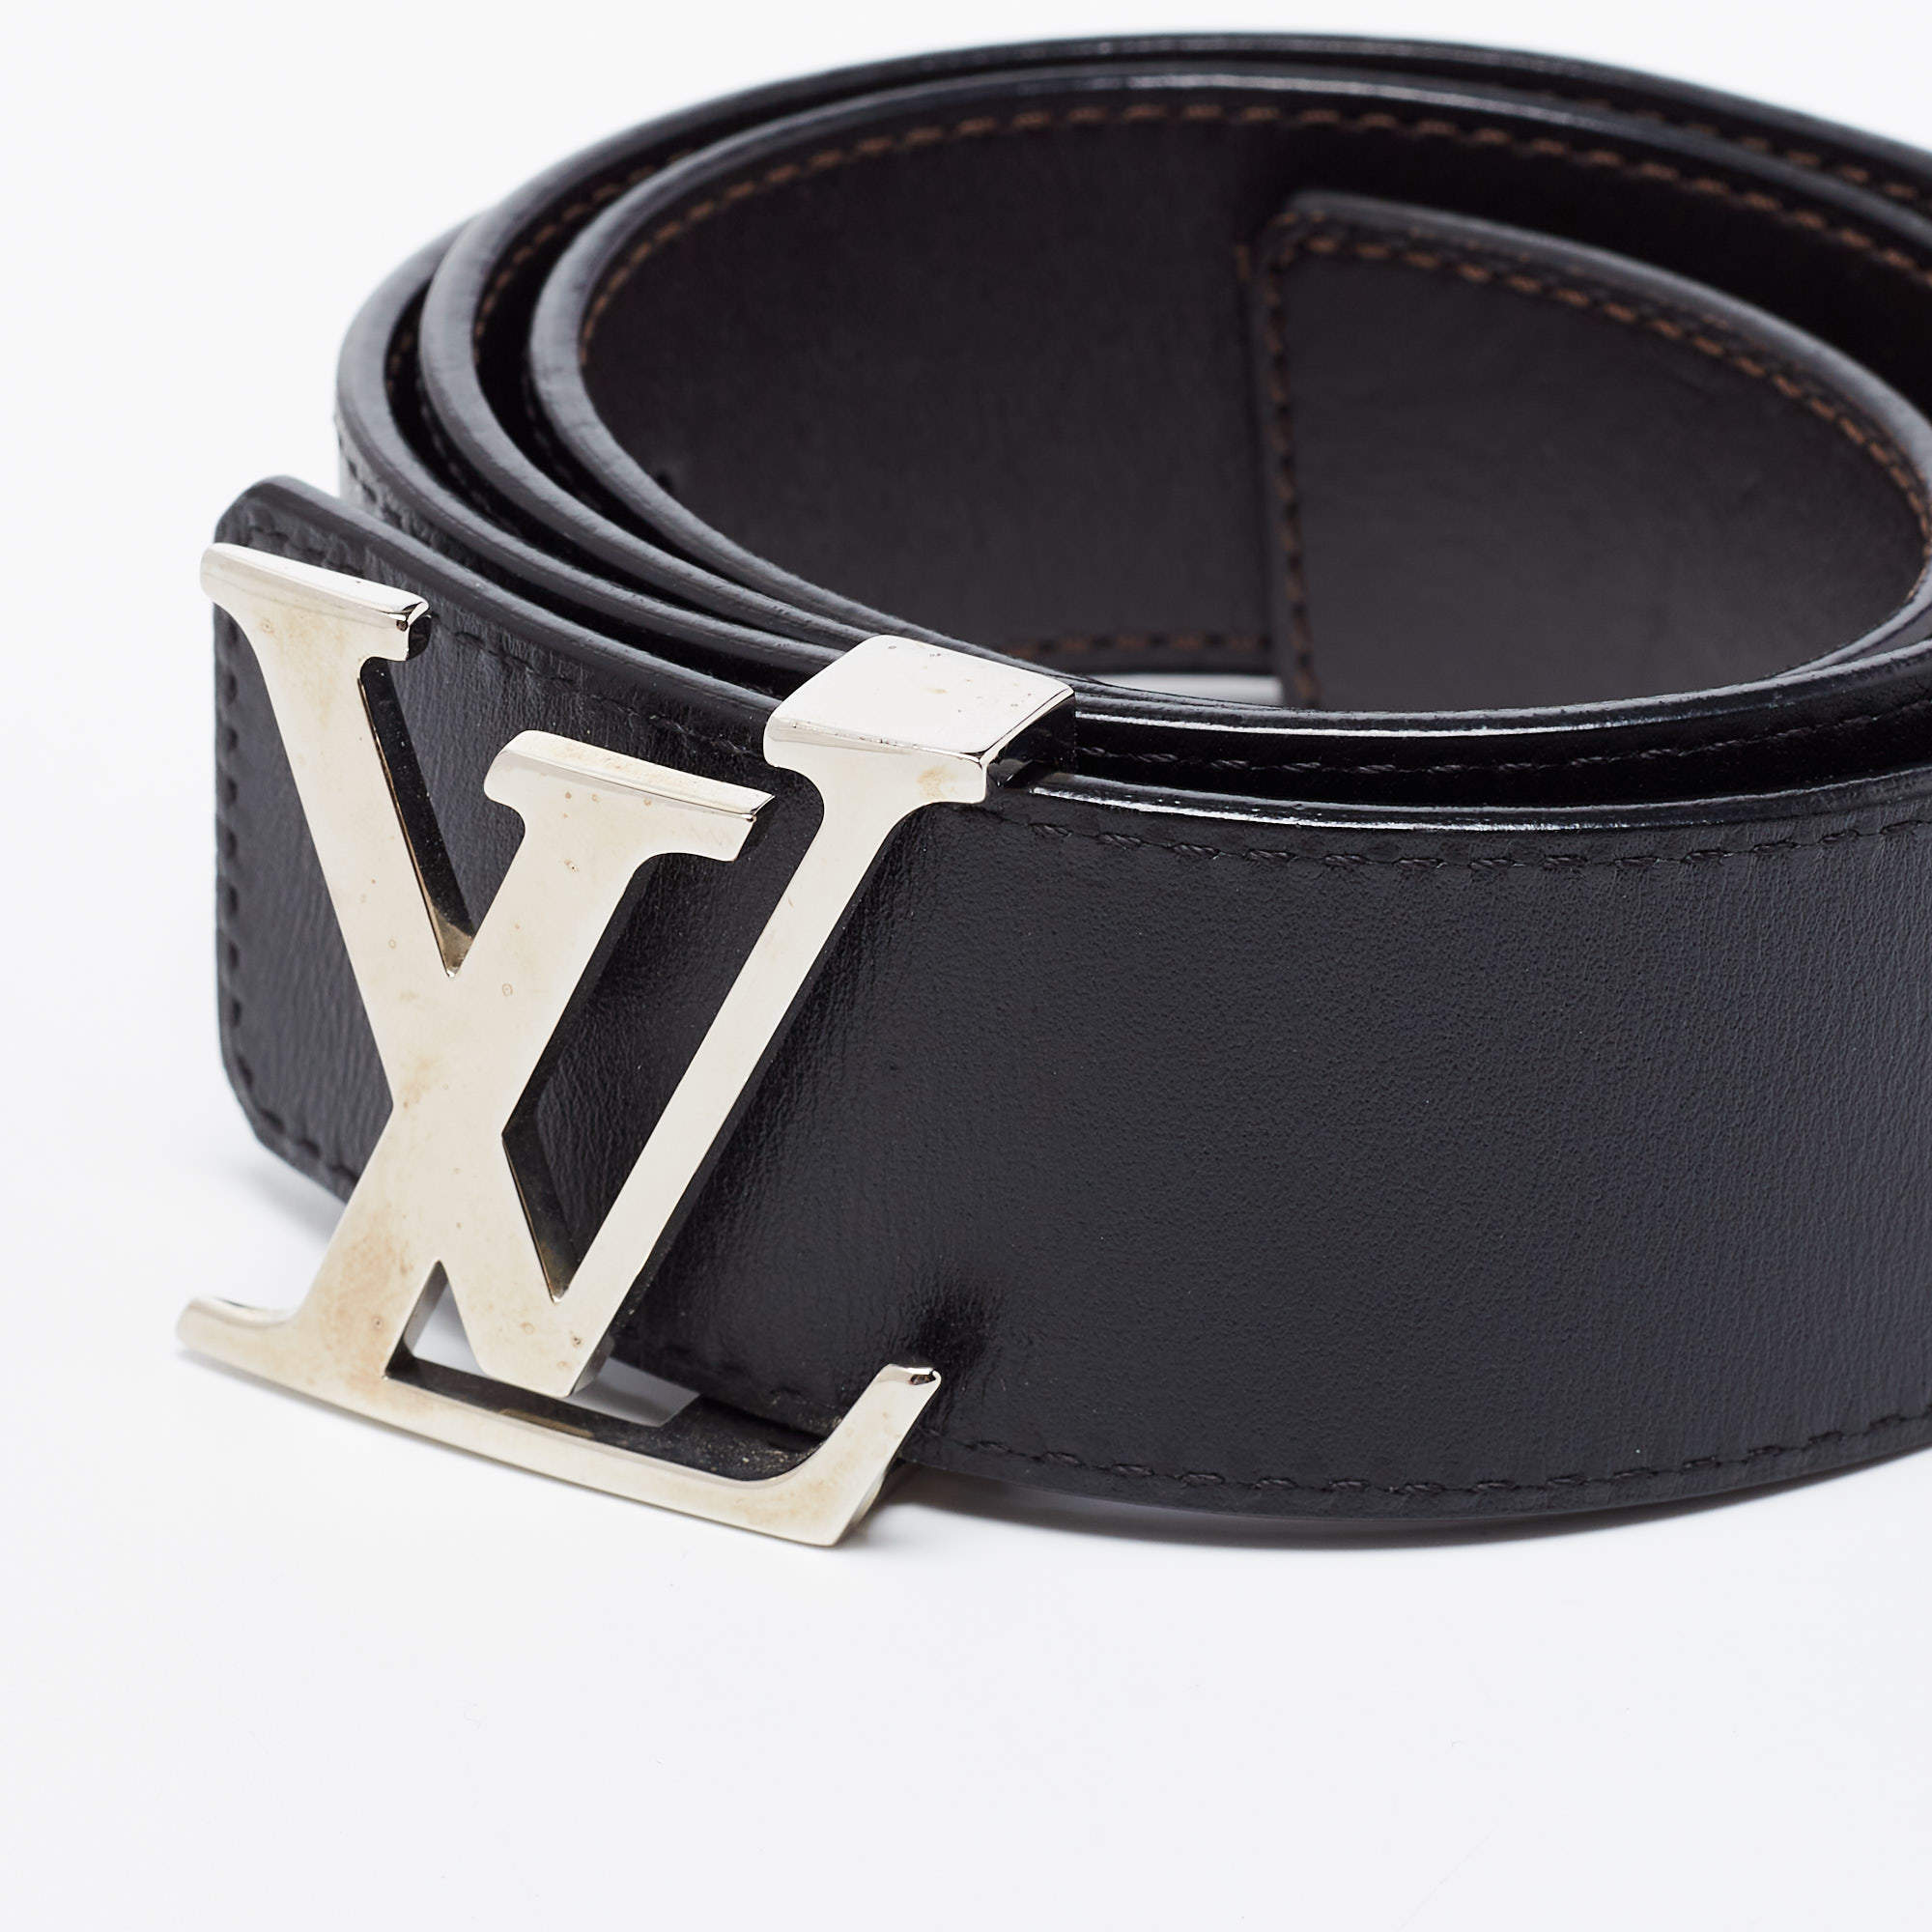 Pre-Owned Rare limited edition Louis Vuitton LOUIS VUITTON leather belt  N1002 Sunture LV 100LV 85 size 80-90cm black men's (Good) 